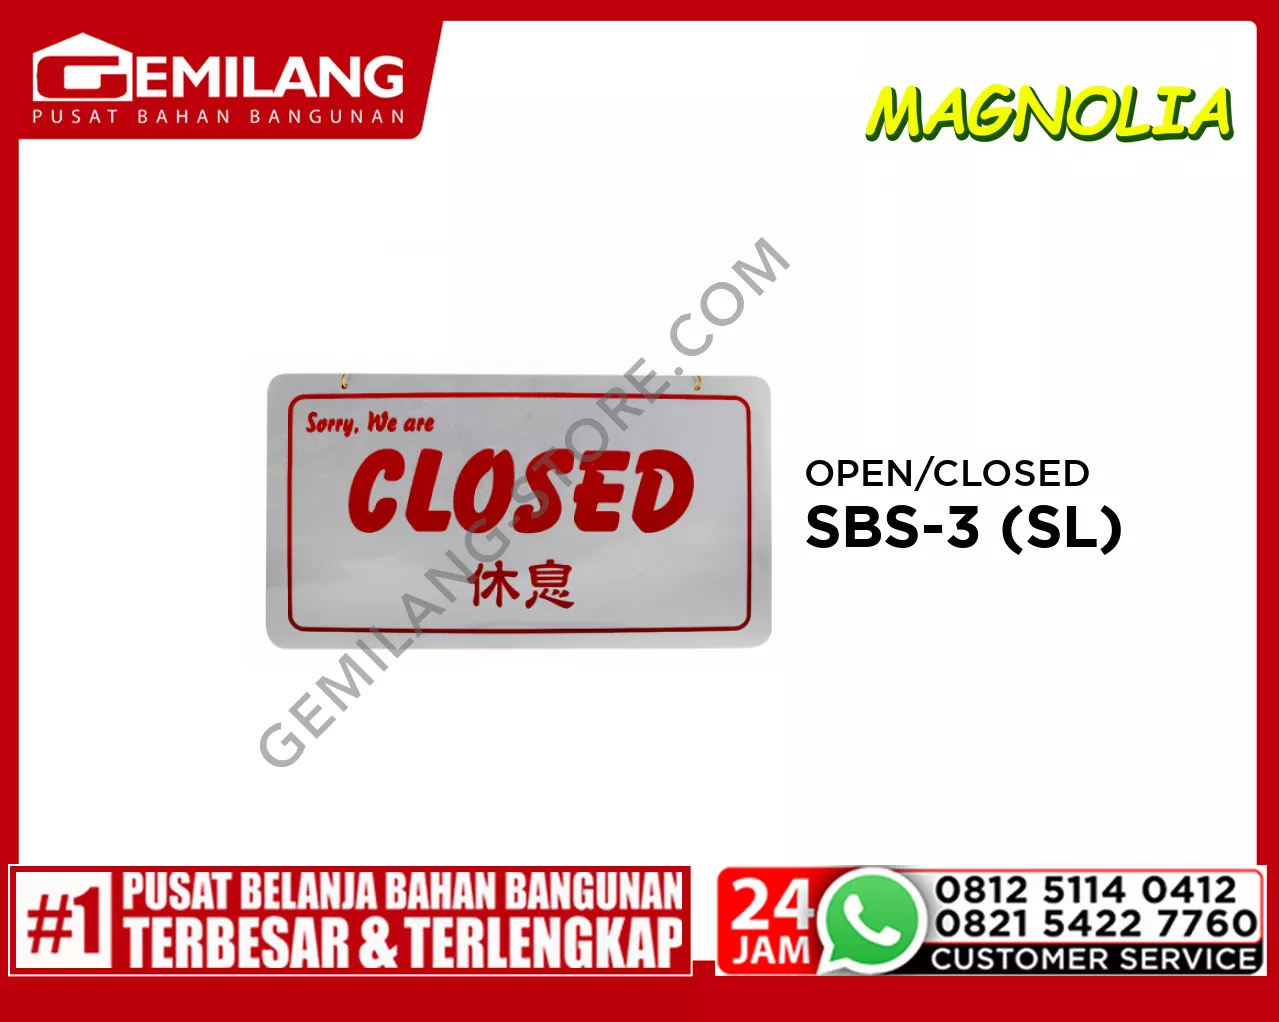 OPEN/CLOSED SBS-3 (SL)